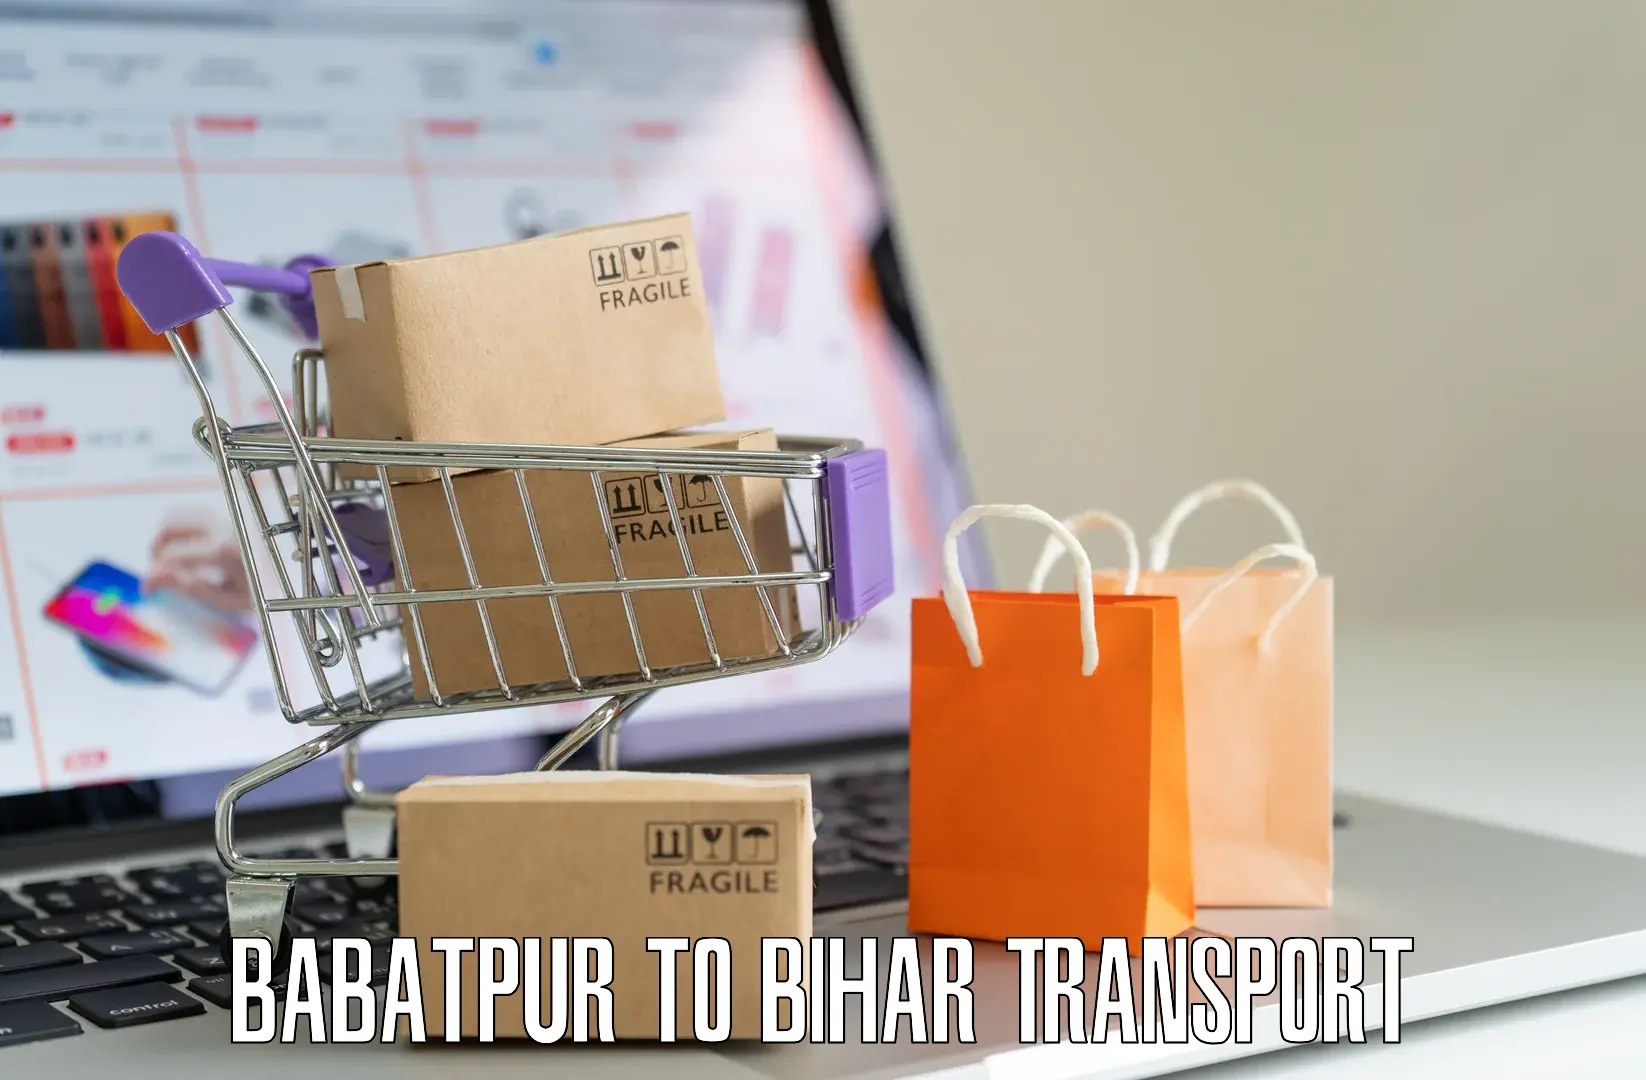 Vehicle parcel service Babatpur to Kharagpur Munger